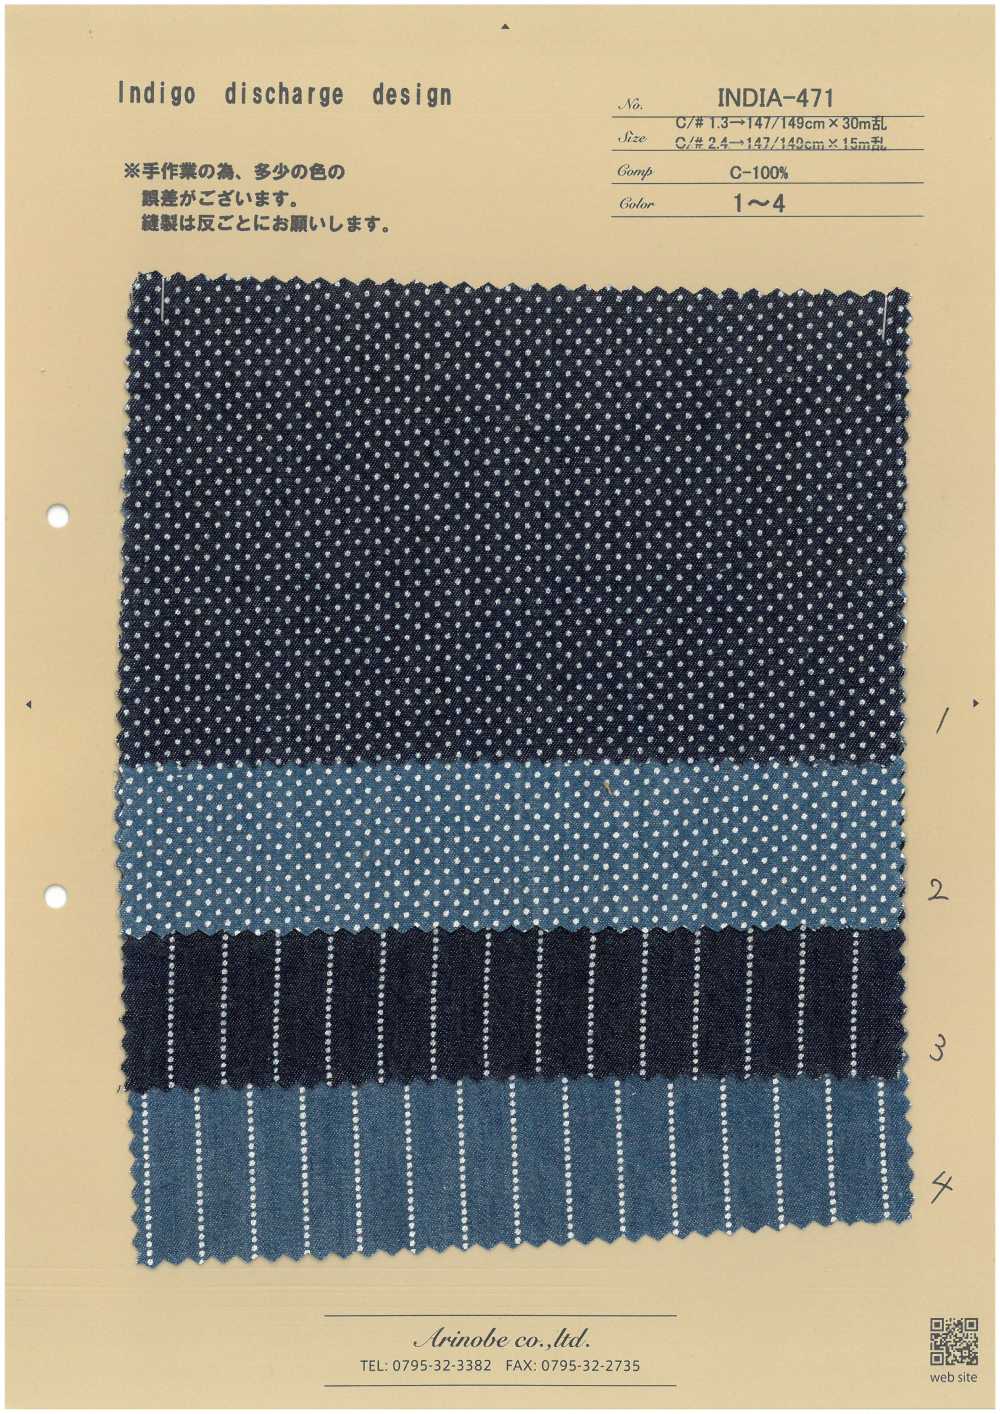 INDIA-471 Indigo Discharge Design[Textile / Fabric] ARINOBE CO., LTD.